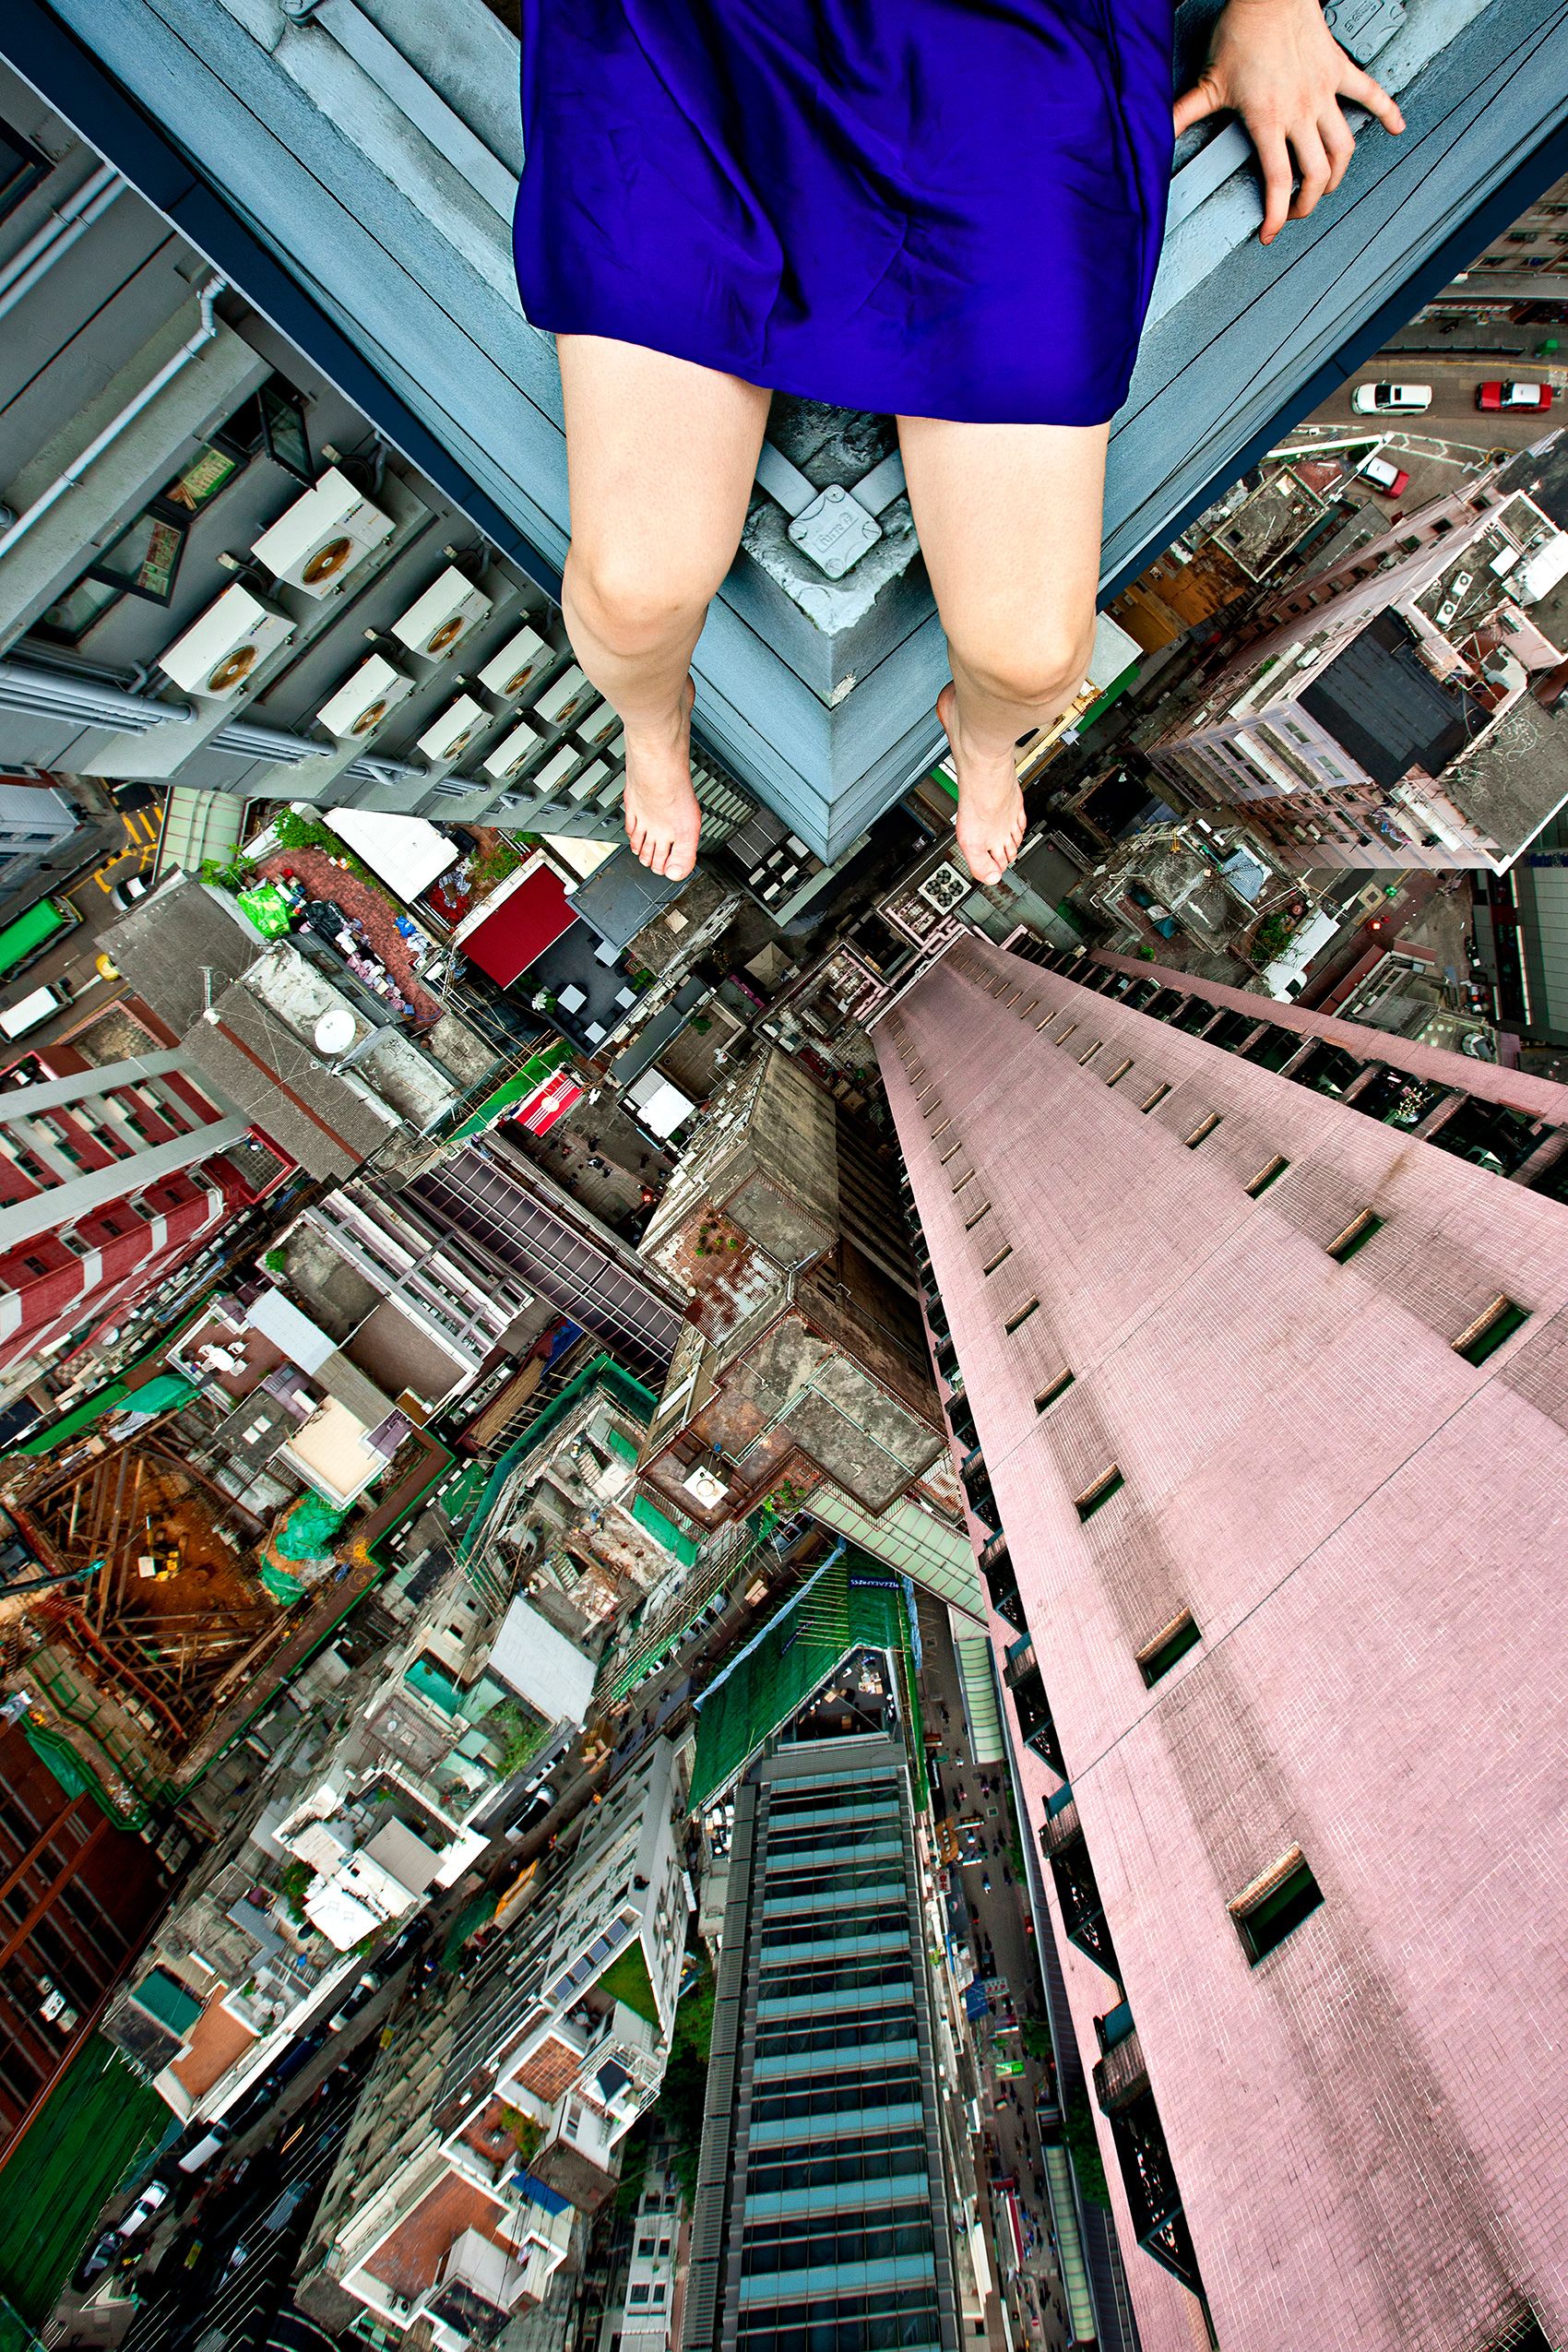 Ahn Jun em cima de um prédio muito alto em Hong Kong.